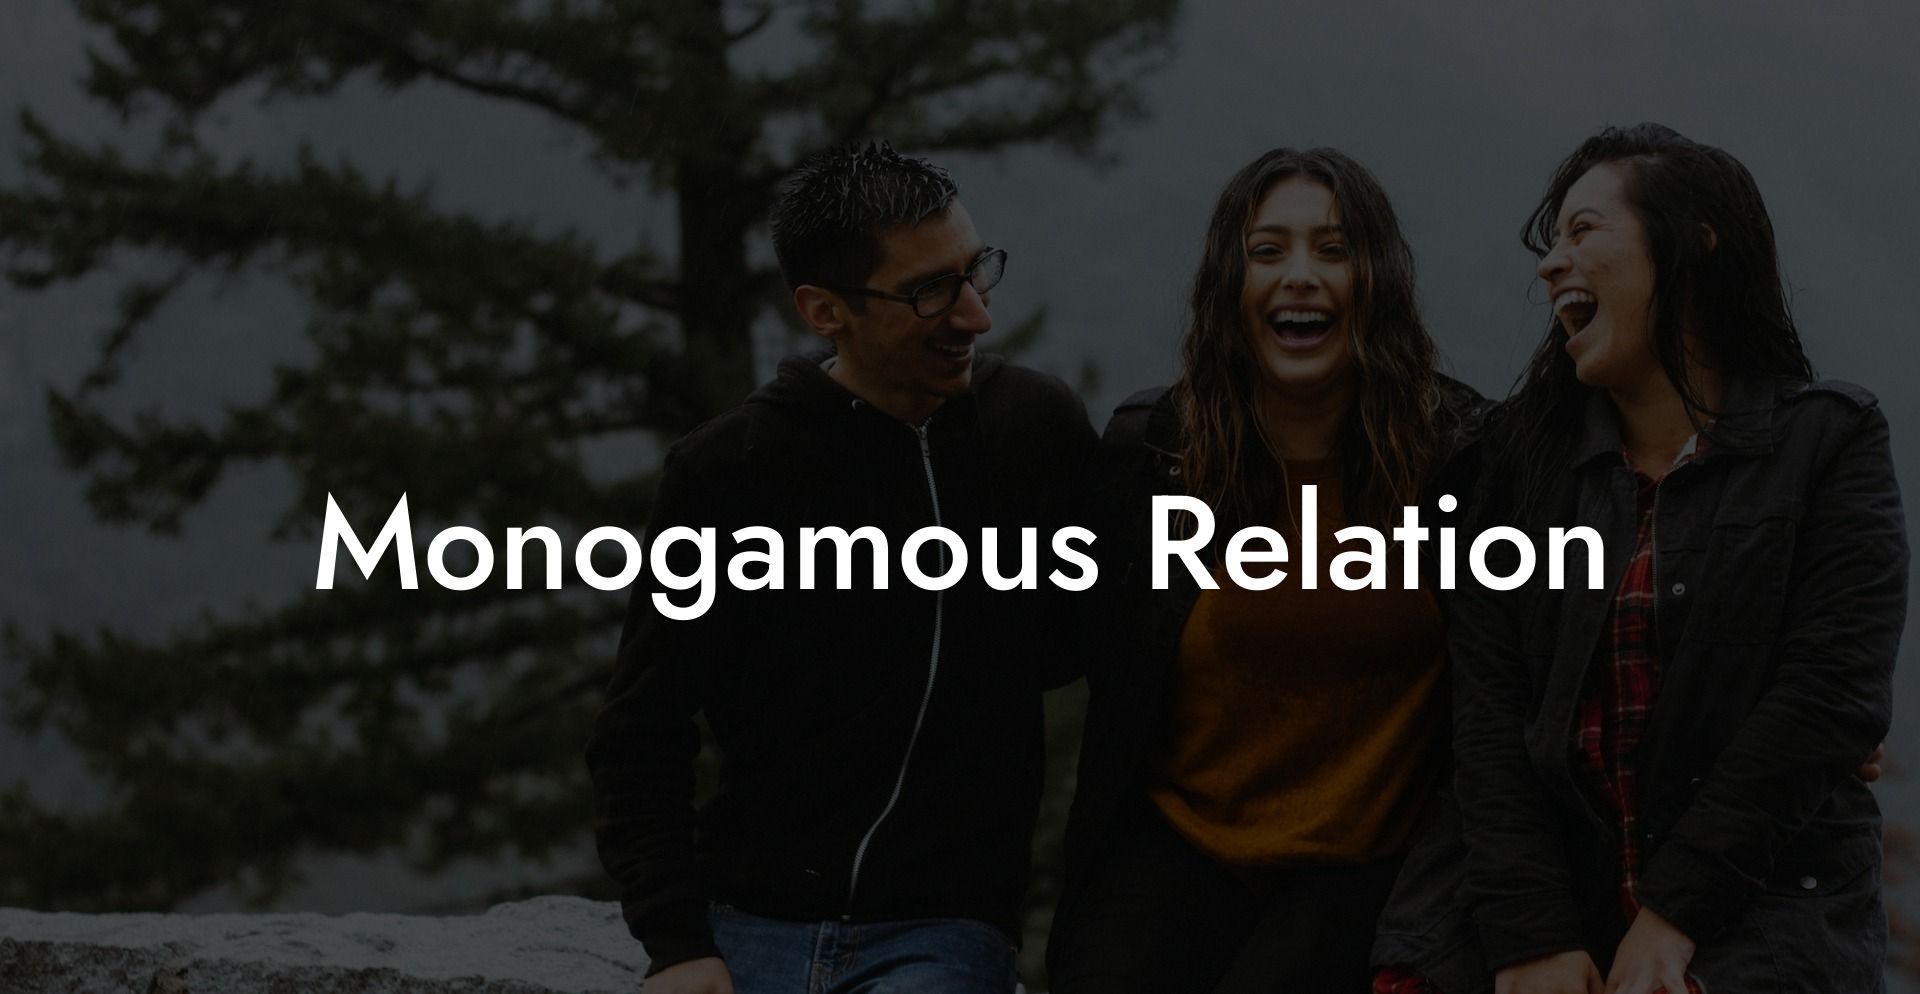 Monogamous Relation